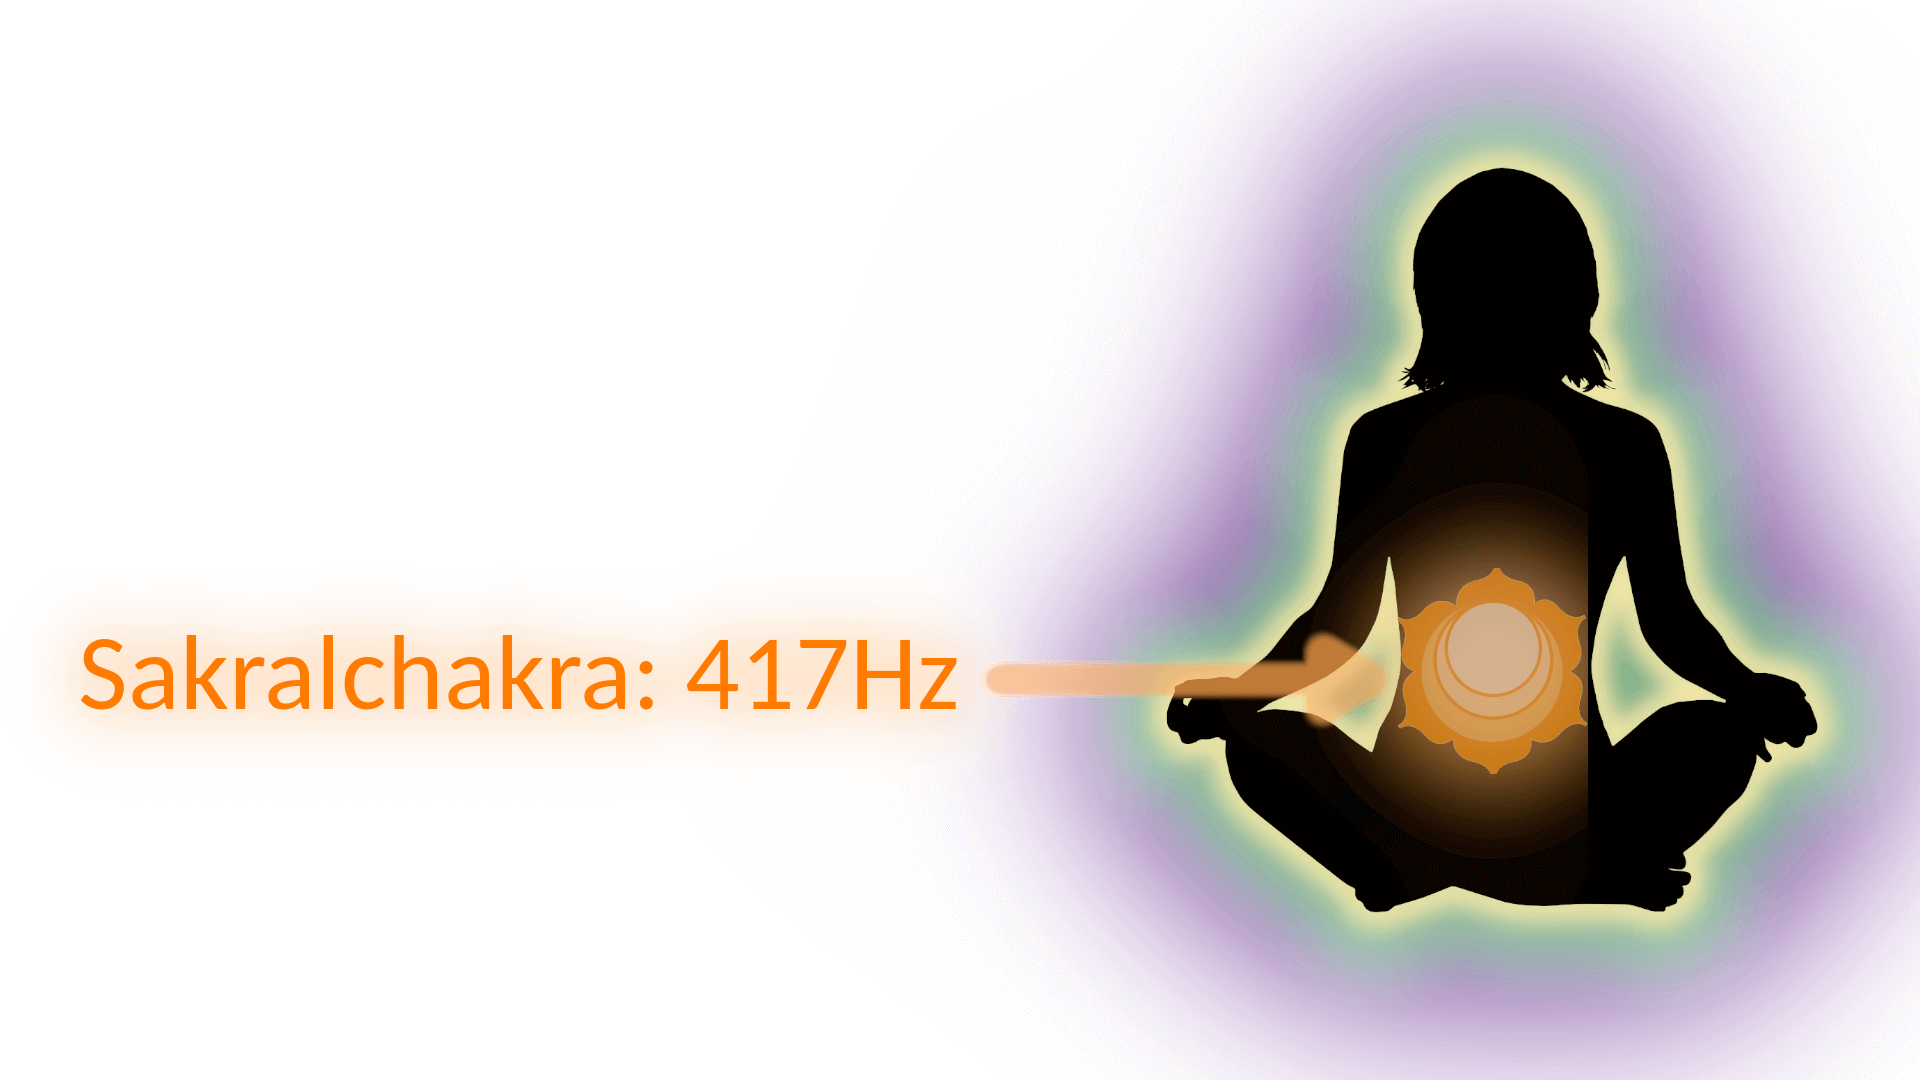 Bild von einer Frau, die meditiert, eine orange Markierung zeigt, wo das Sakralchakra (417Hz) ist. Solfeggio Frequenzen